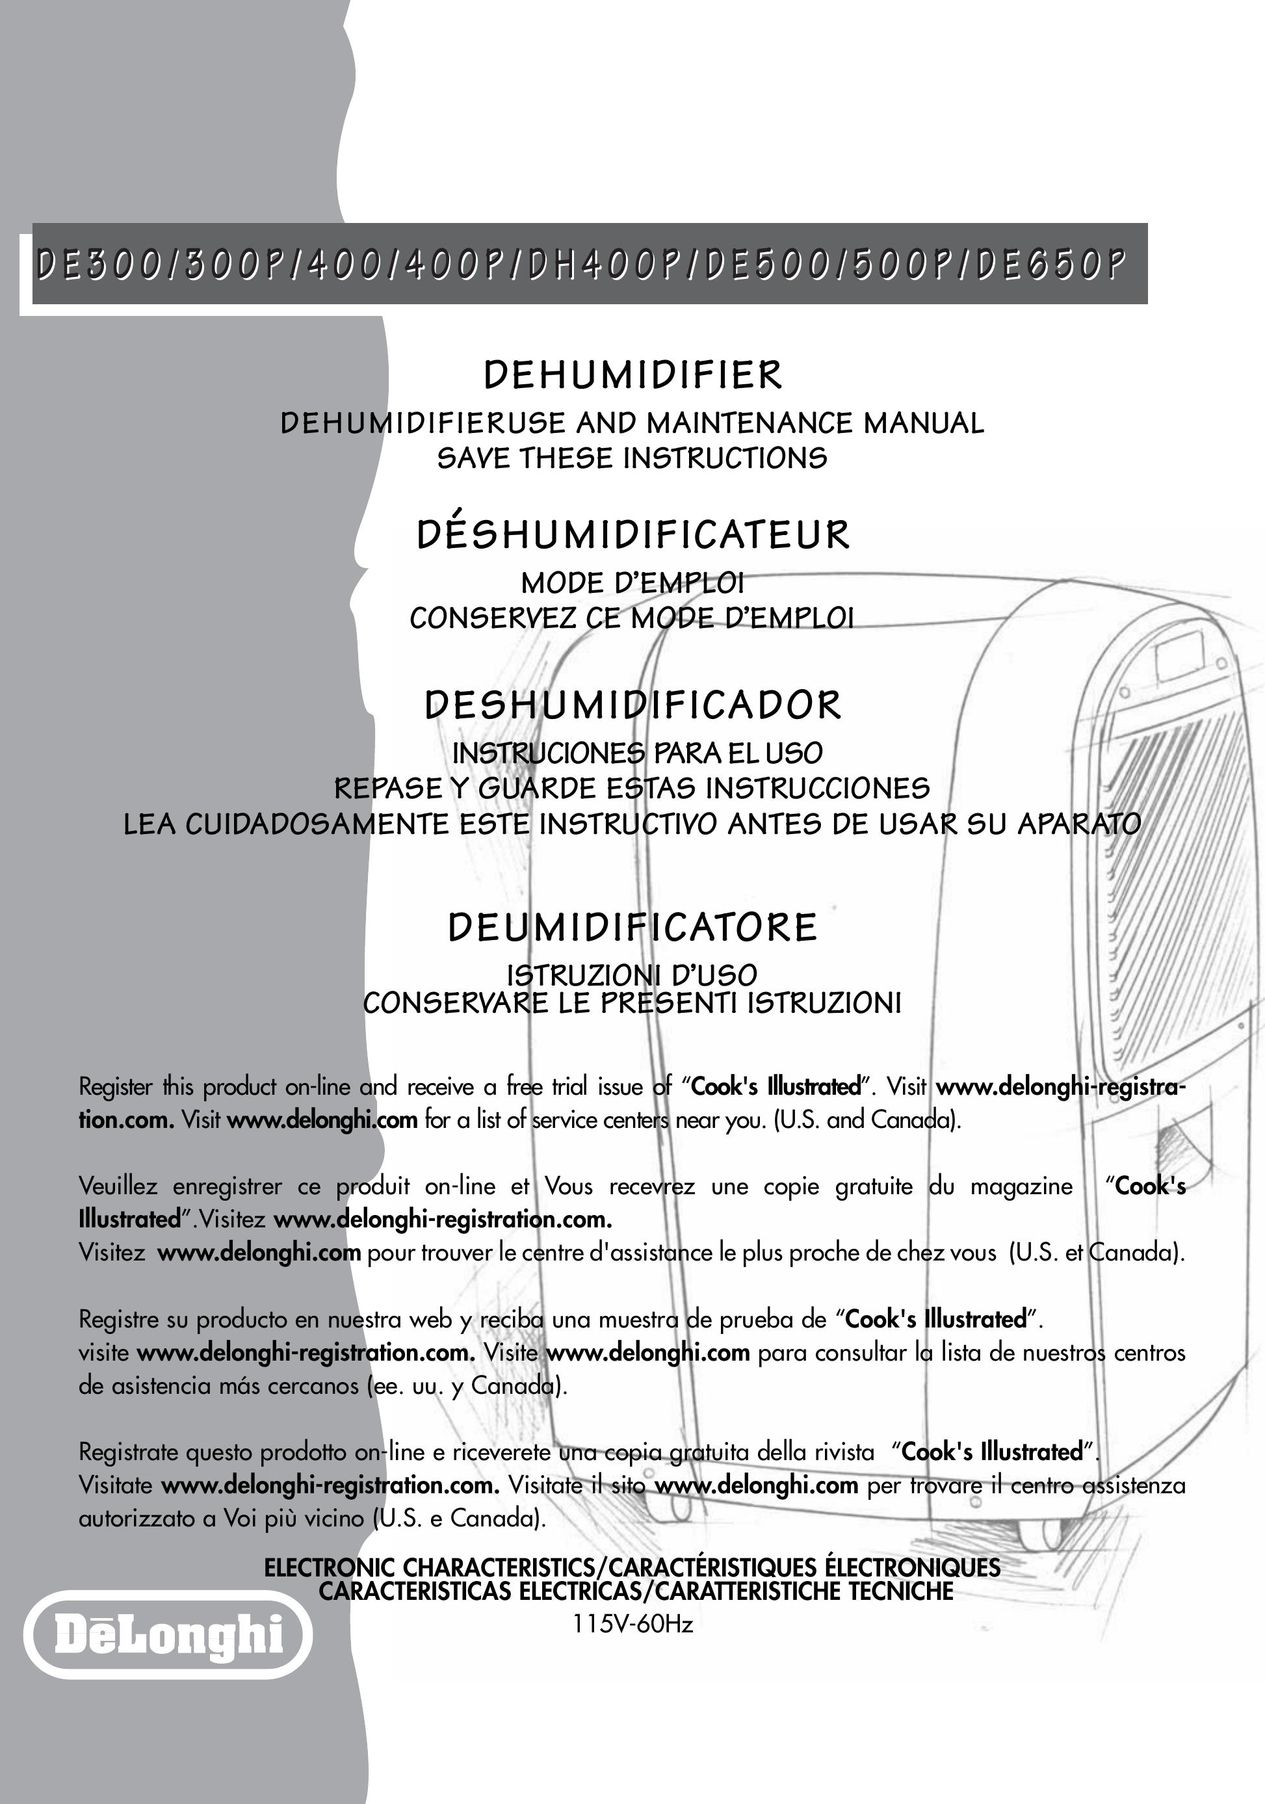 DeLonghi de 400 Dehumidifier User Manual